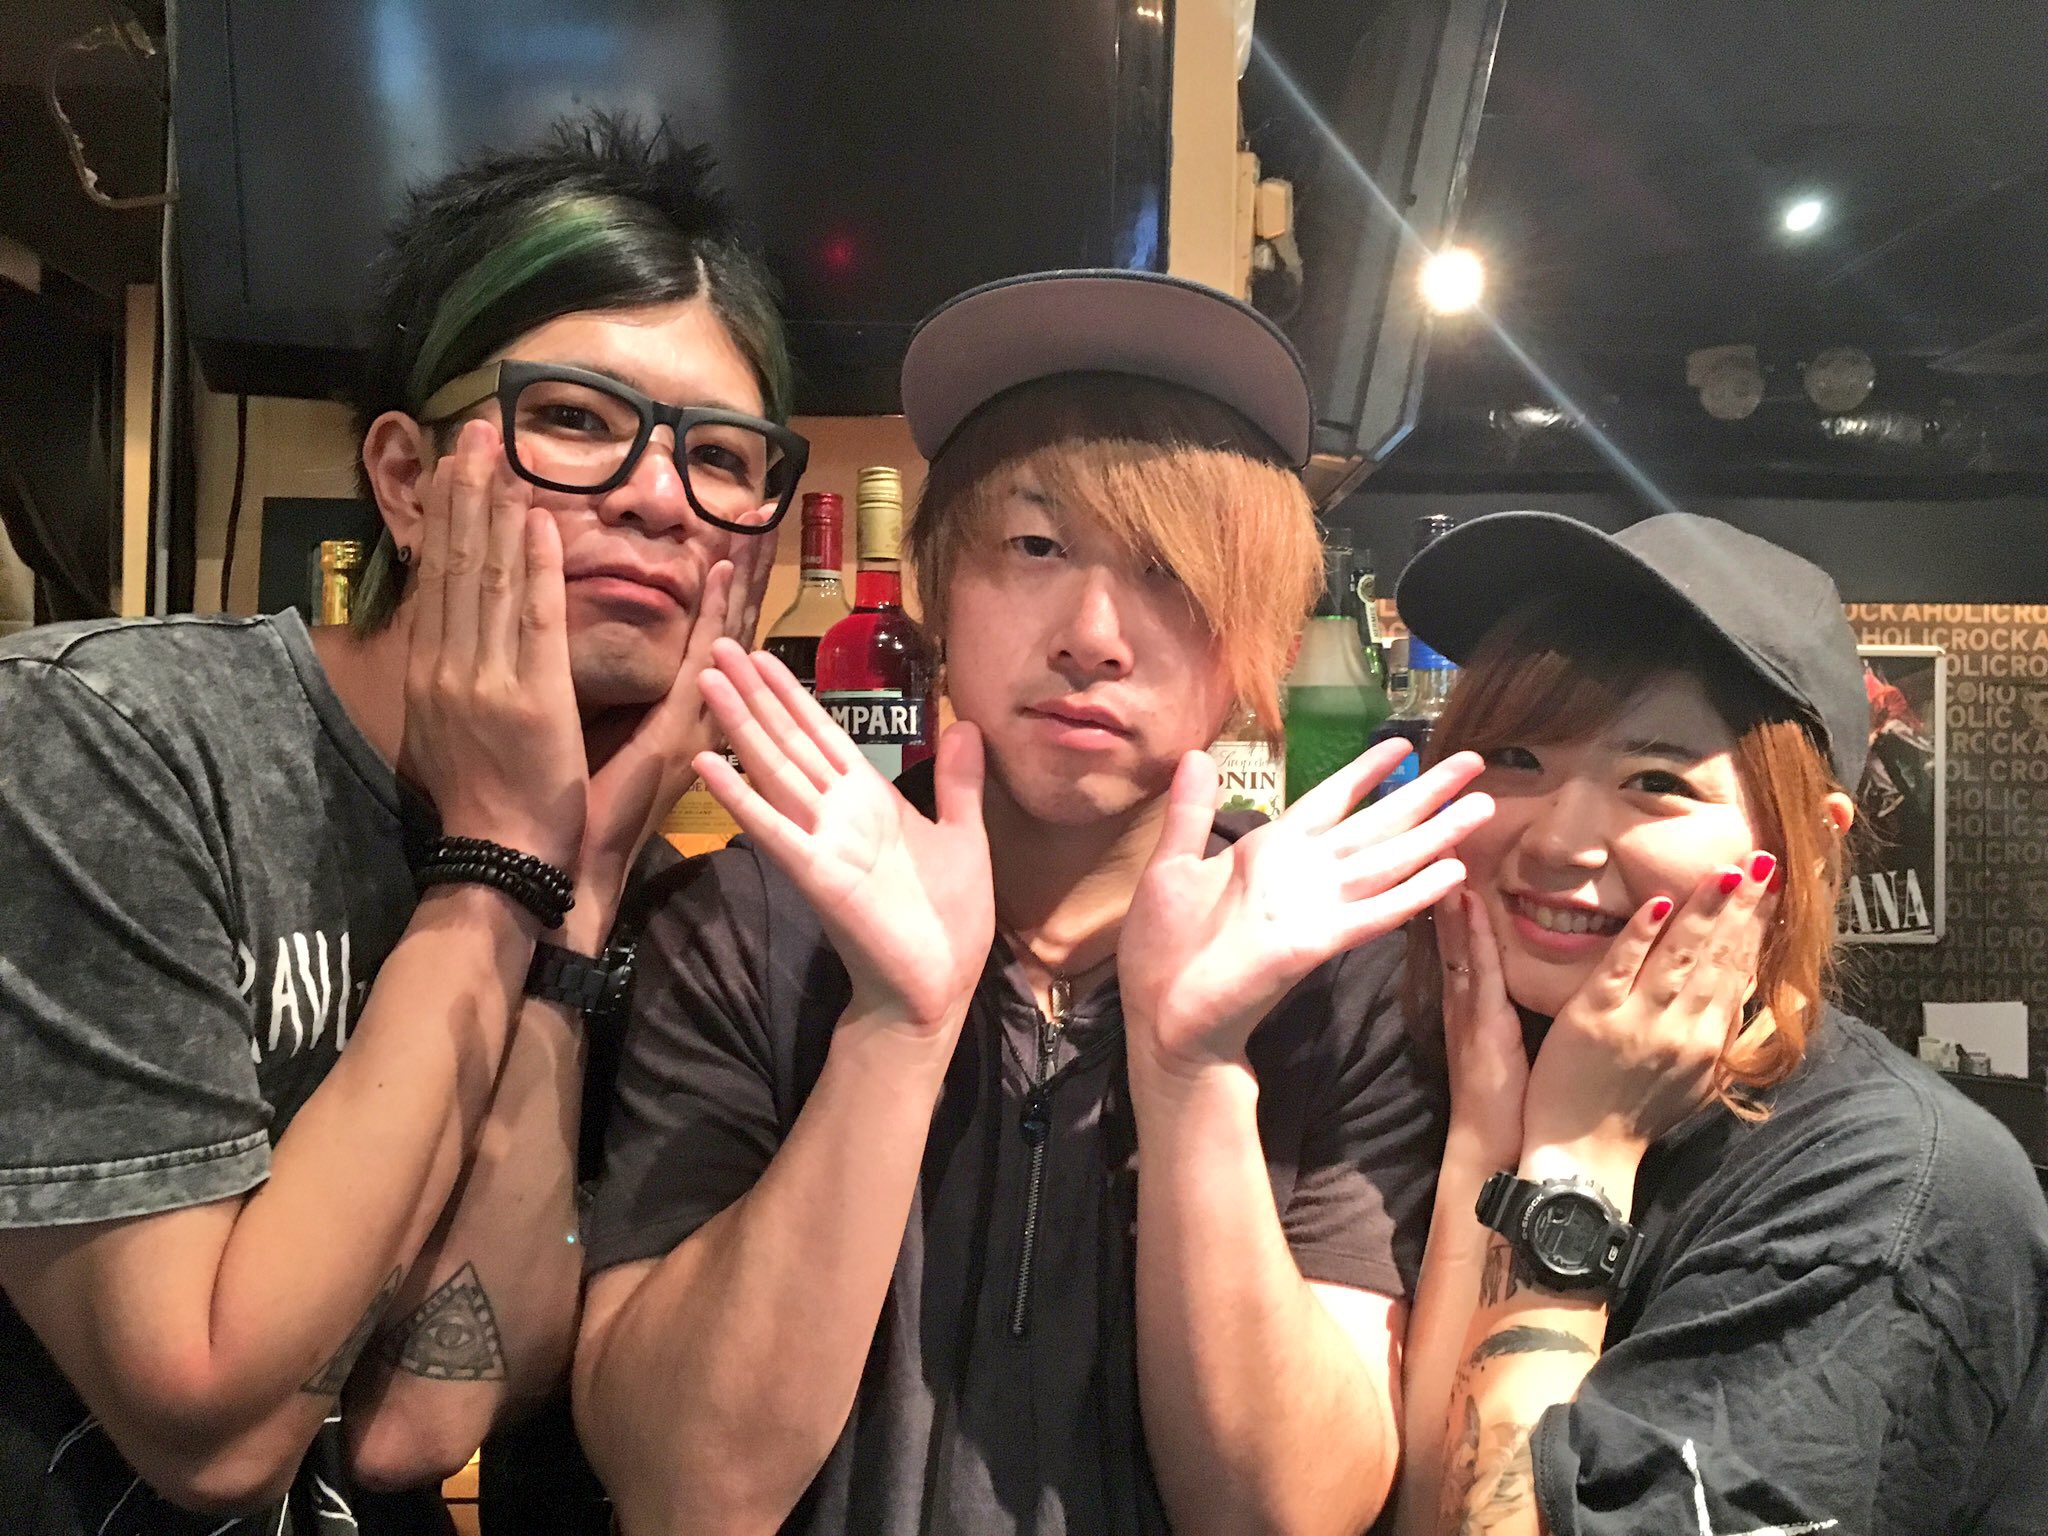 http://bar-rockaholic.jp/shibuya/blog/IMG_5297.JPG